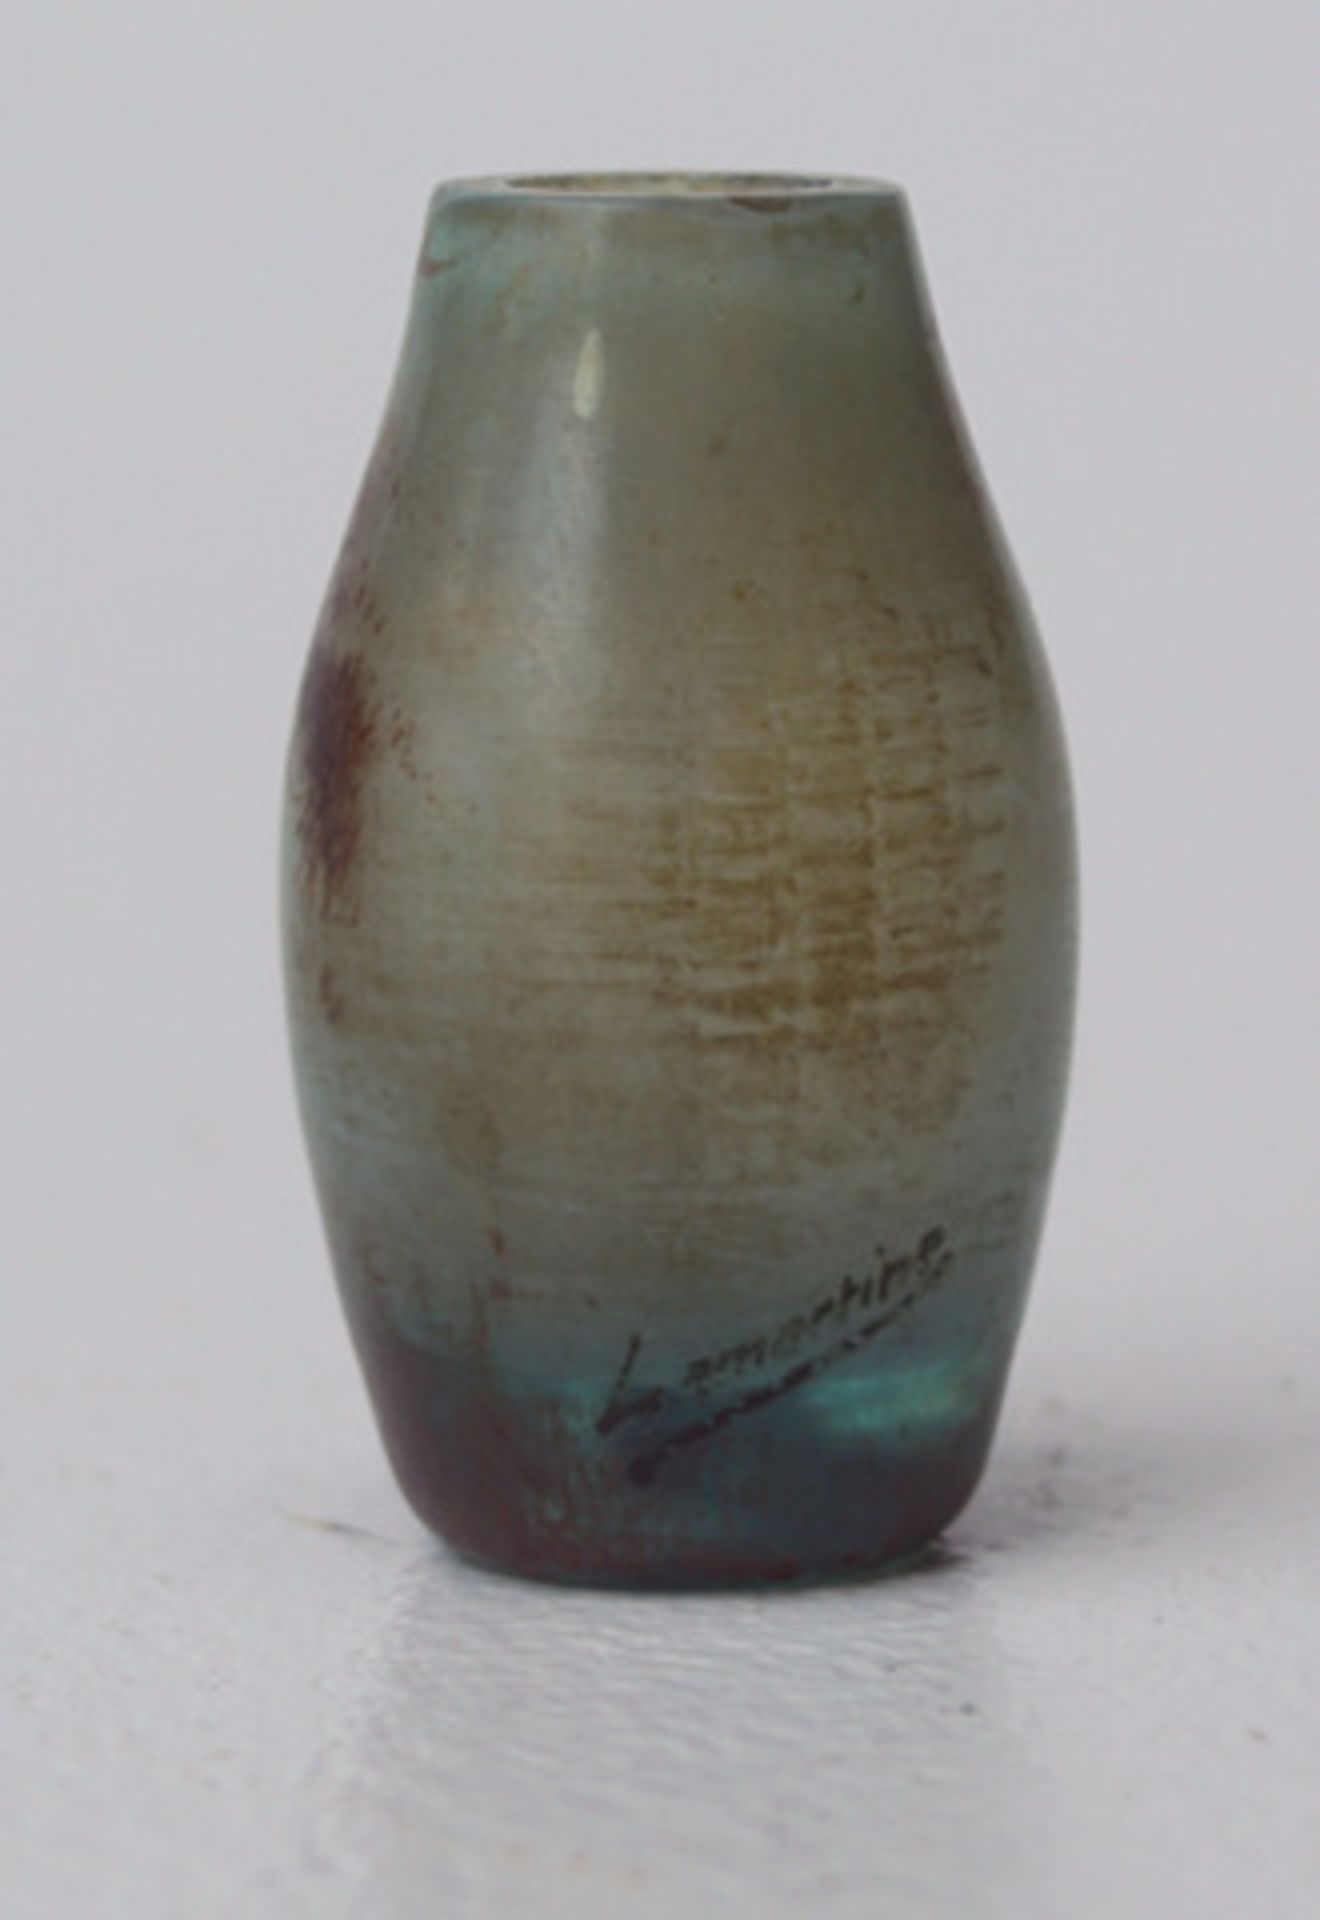 Miniaturvase Lamartine Winterl. Bäume Ovoide Vase leicht grünliche Glasmasse vor grauem Überfang, - Bild 3 aus 3